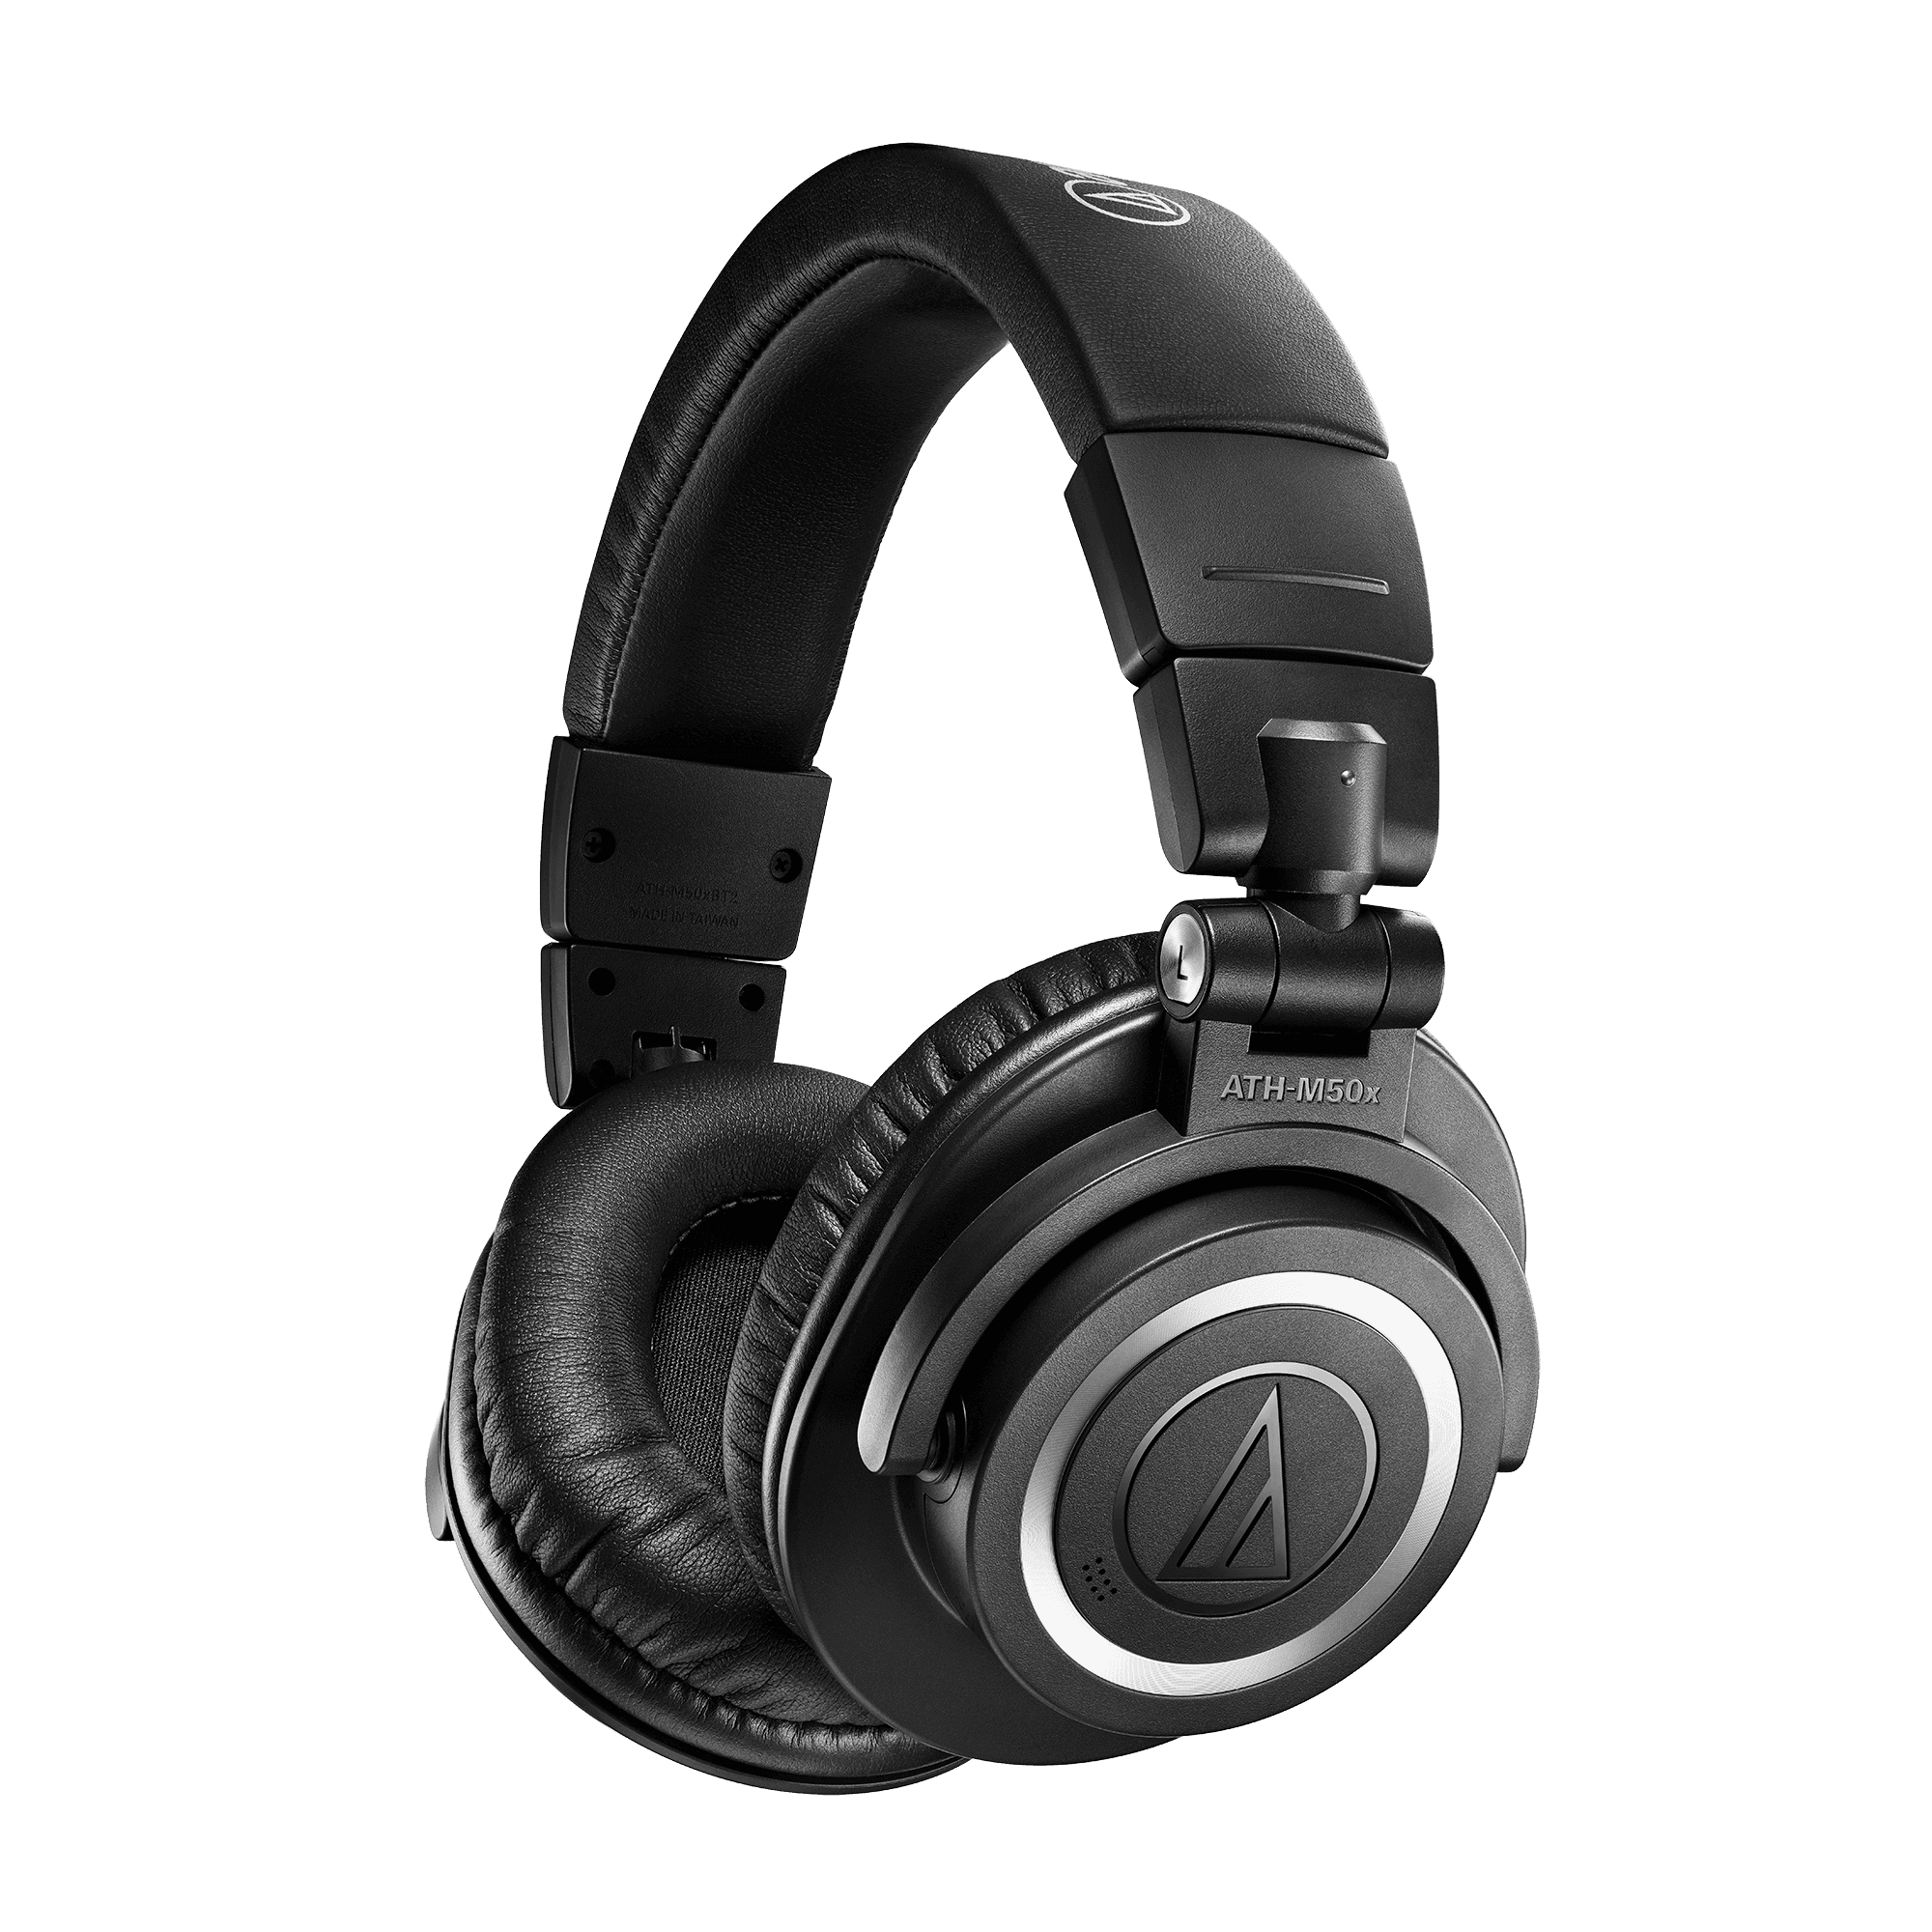 سماعات راس لاسلكية 99 ديسبل اوديو تيكنيا Audio Technica Wireless Over Ear Headphones ATH-M50xBluetooth2